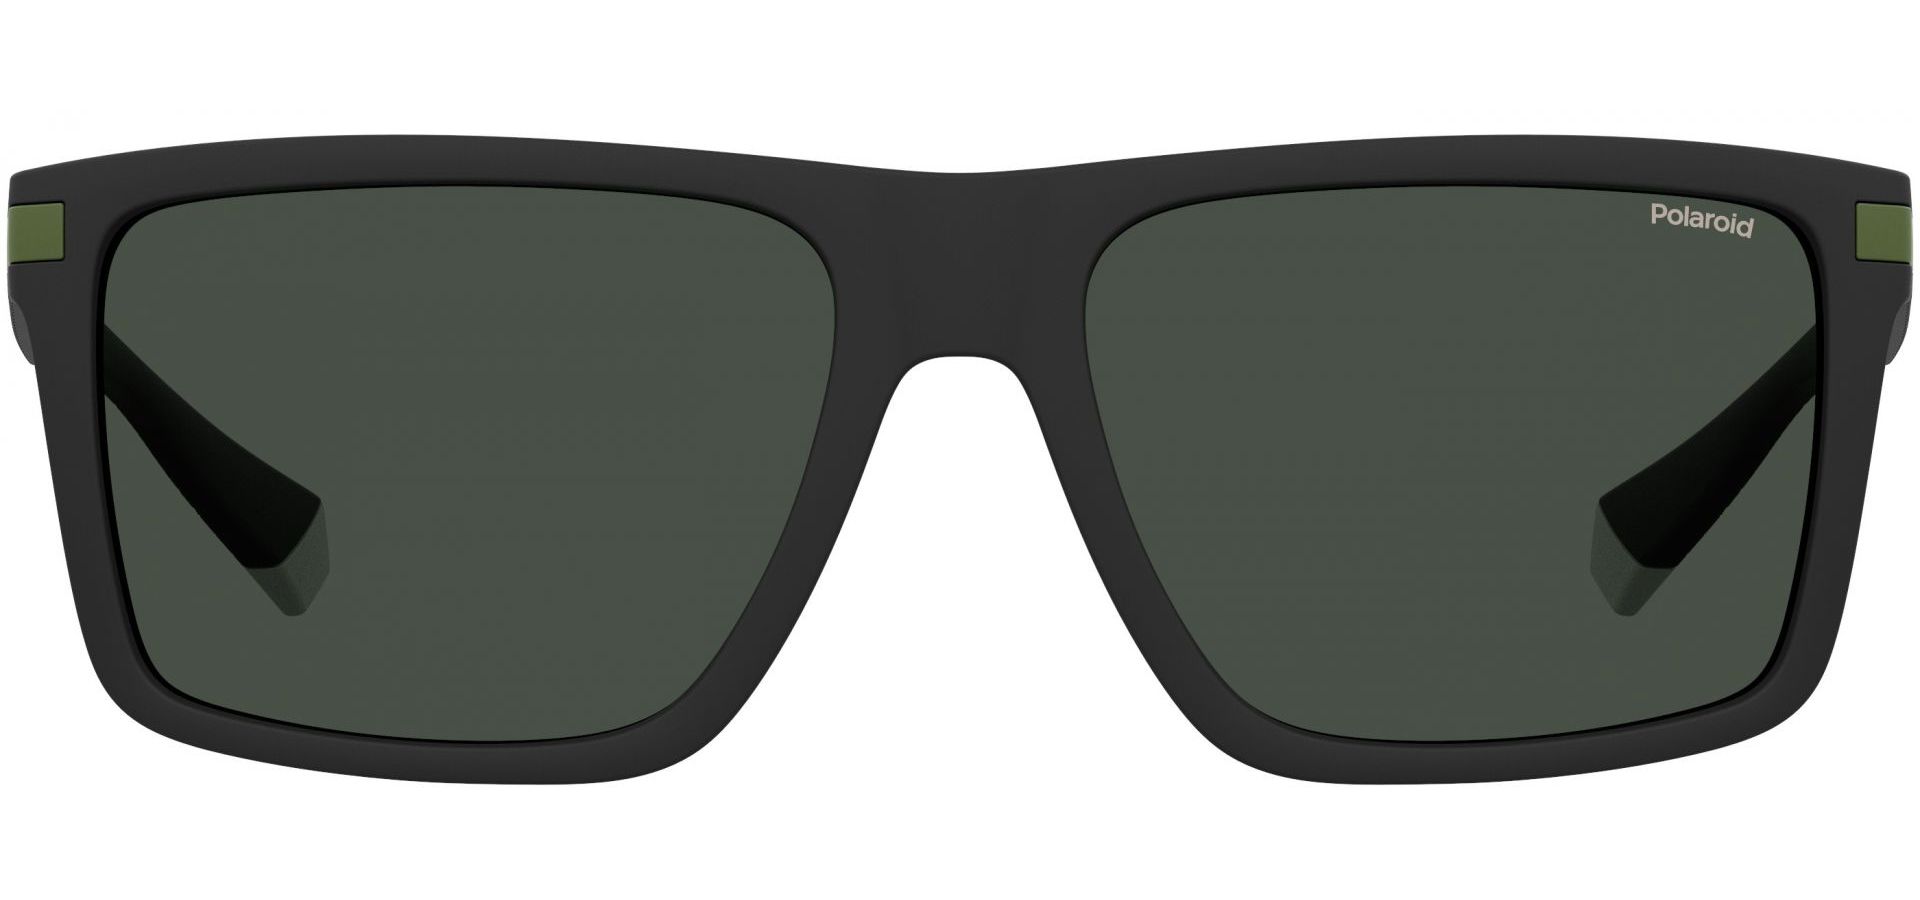 Sunčane naočale Polaroid PLD 2098/S: Boja: Black w/ Green, Veličina: 56/17/140, Spol: muške, Materijal: acetat, Vrsta leće: polarizirane